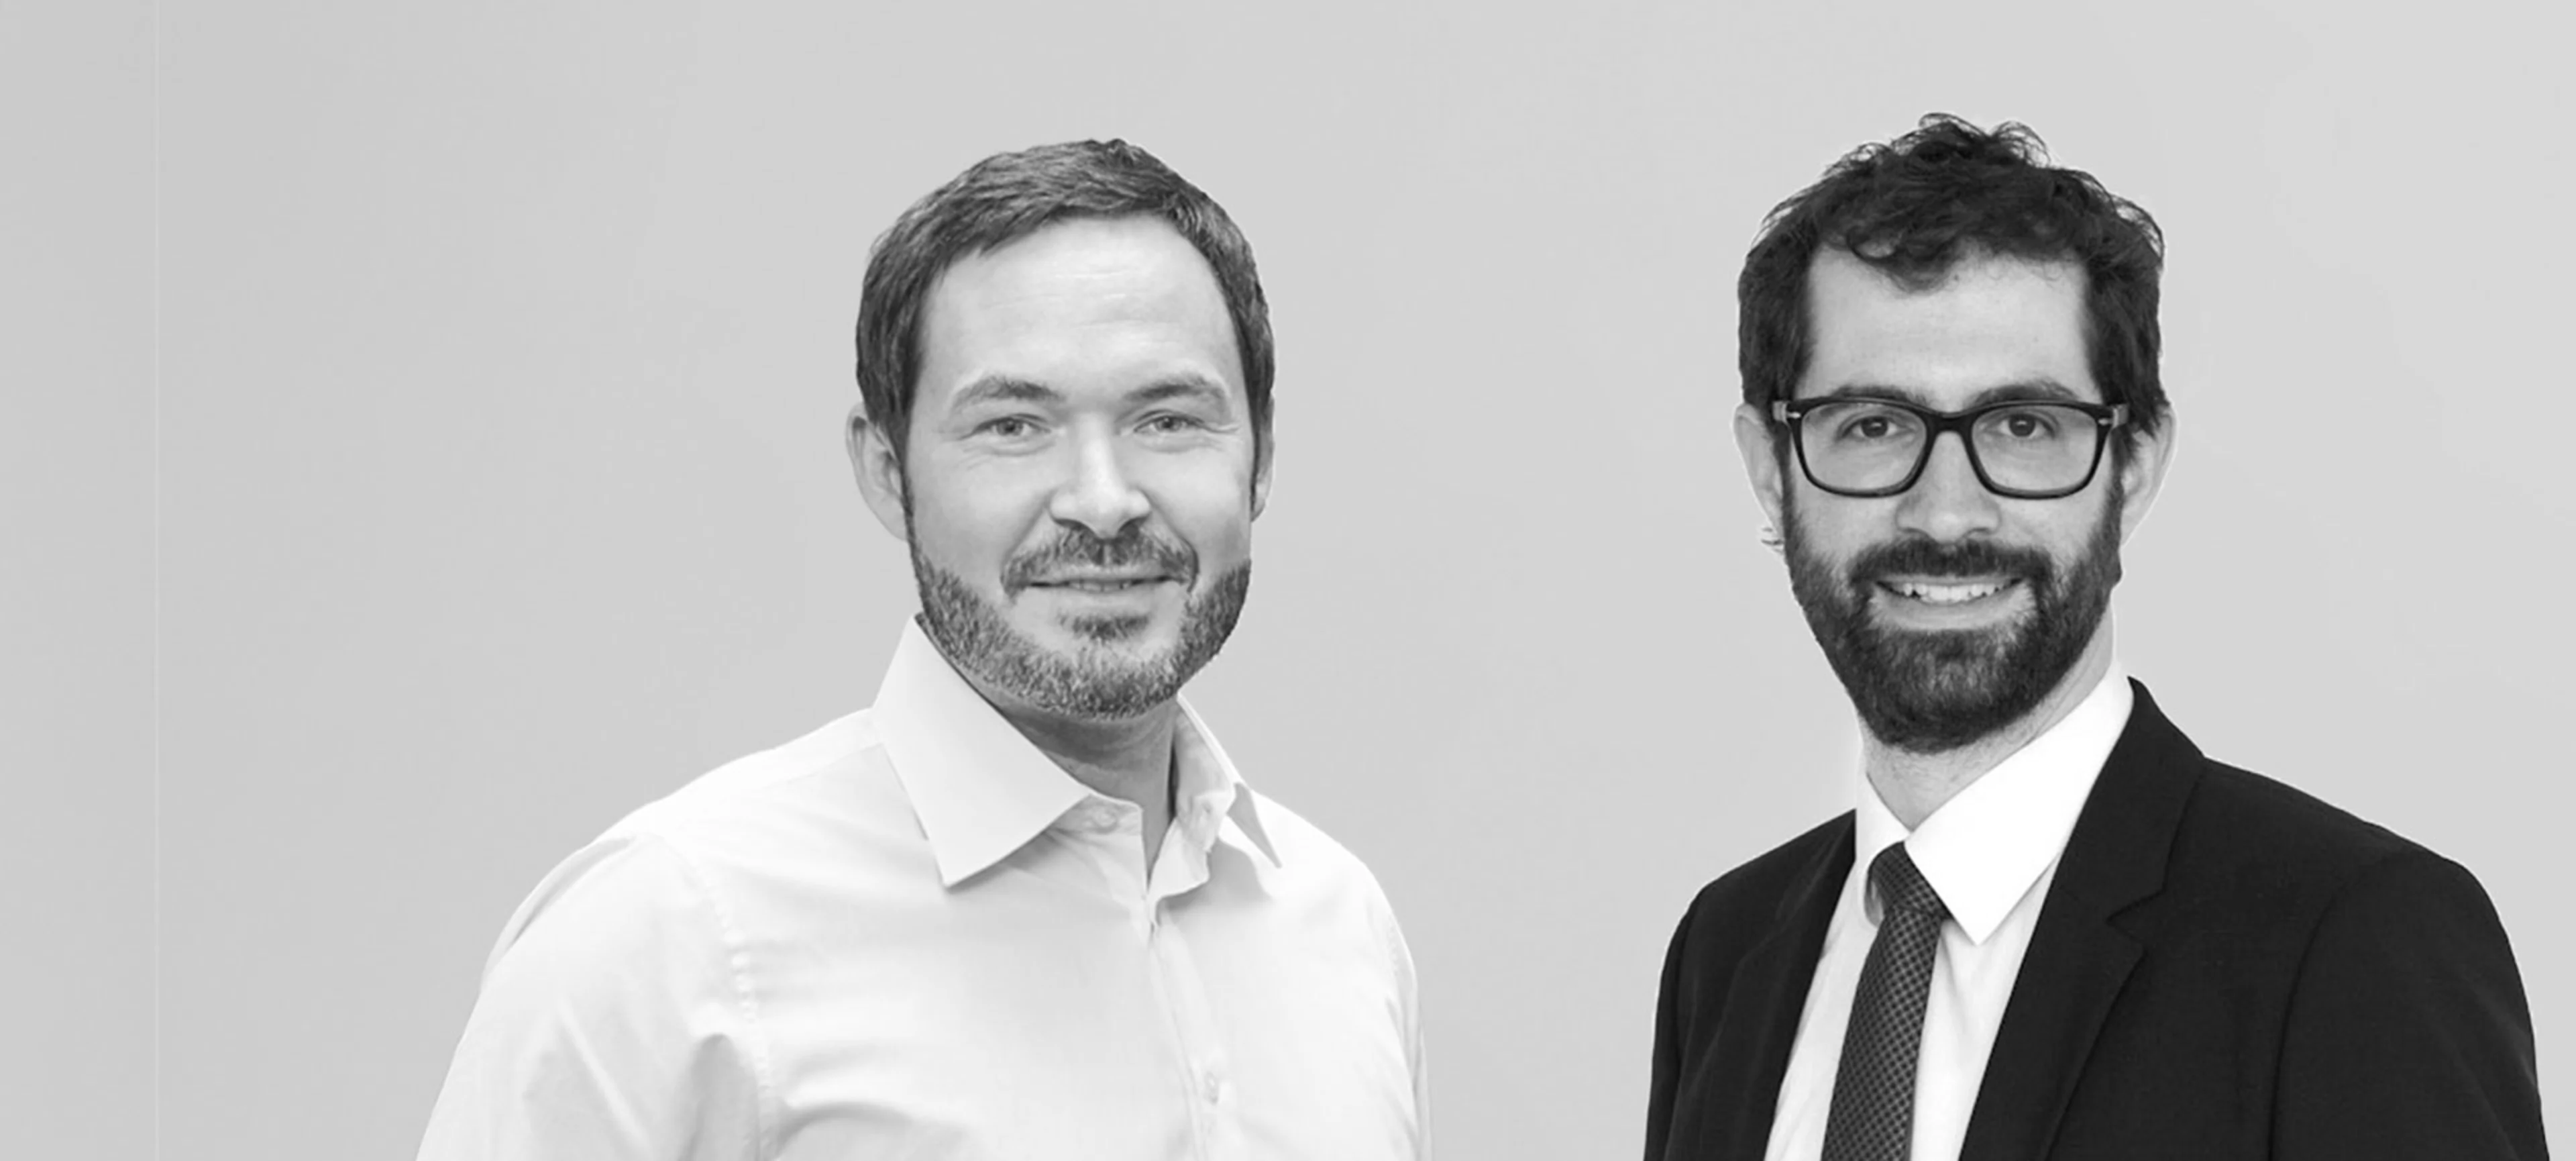 Portraitbild - Martin Schneider, Geschäftsführer der Allvest GmbH, und Dr. Andreas Ott, Head of Investment Strategy der Allianz Investment Management SE